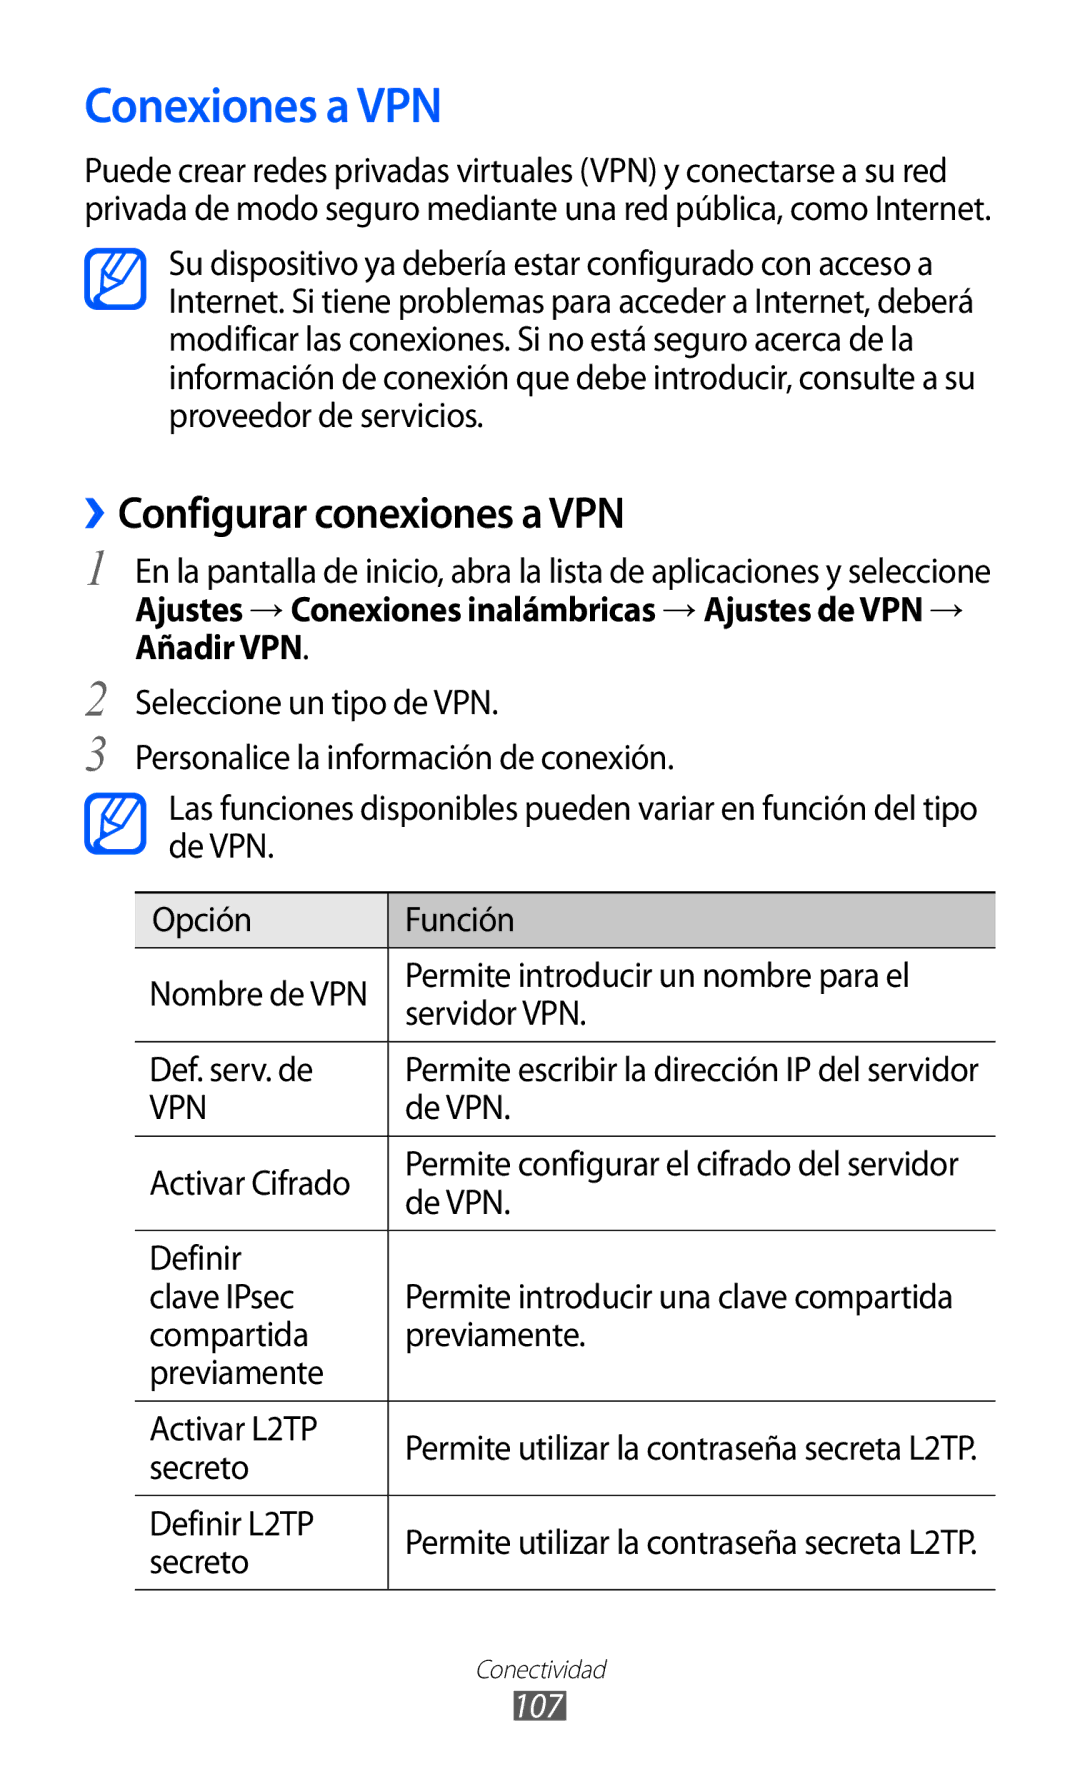 Samsung GT-S6500RWDTPH, GT-S6500RWDTMN, GT-S6500ZYDXEC, GT-S6500ZYDMOP Conexiones a VPN, ››Configurar conexiones a VPN, 107 